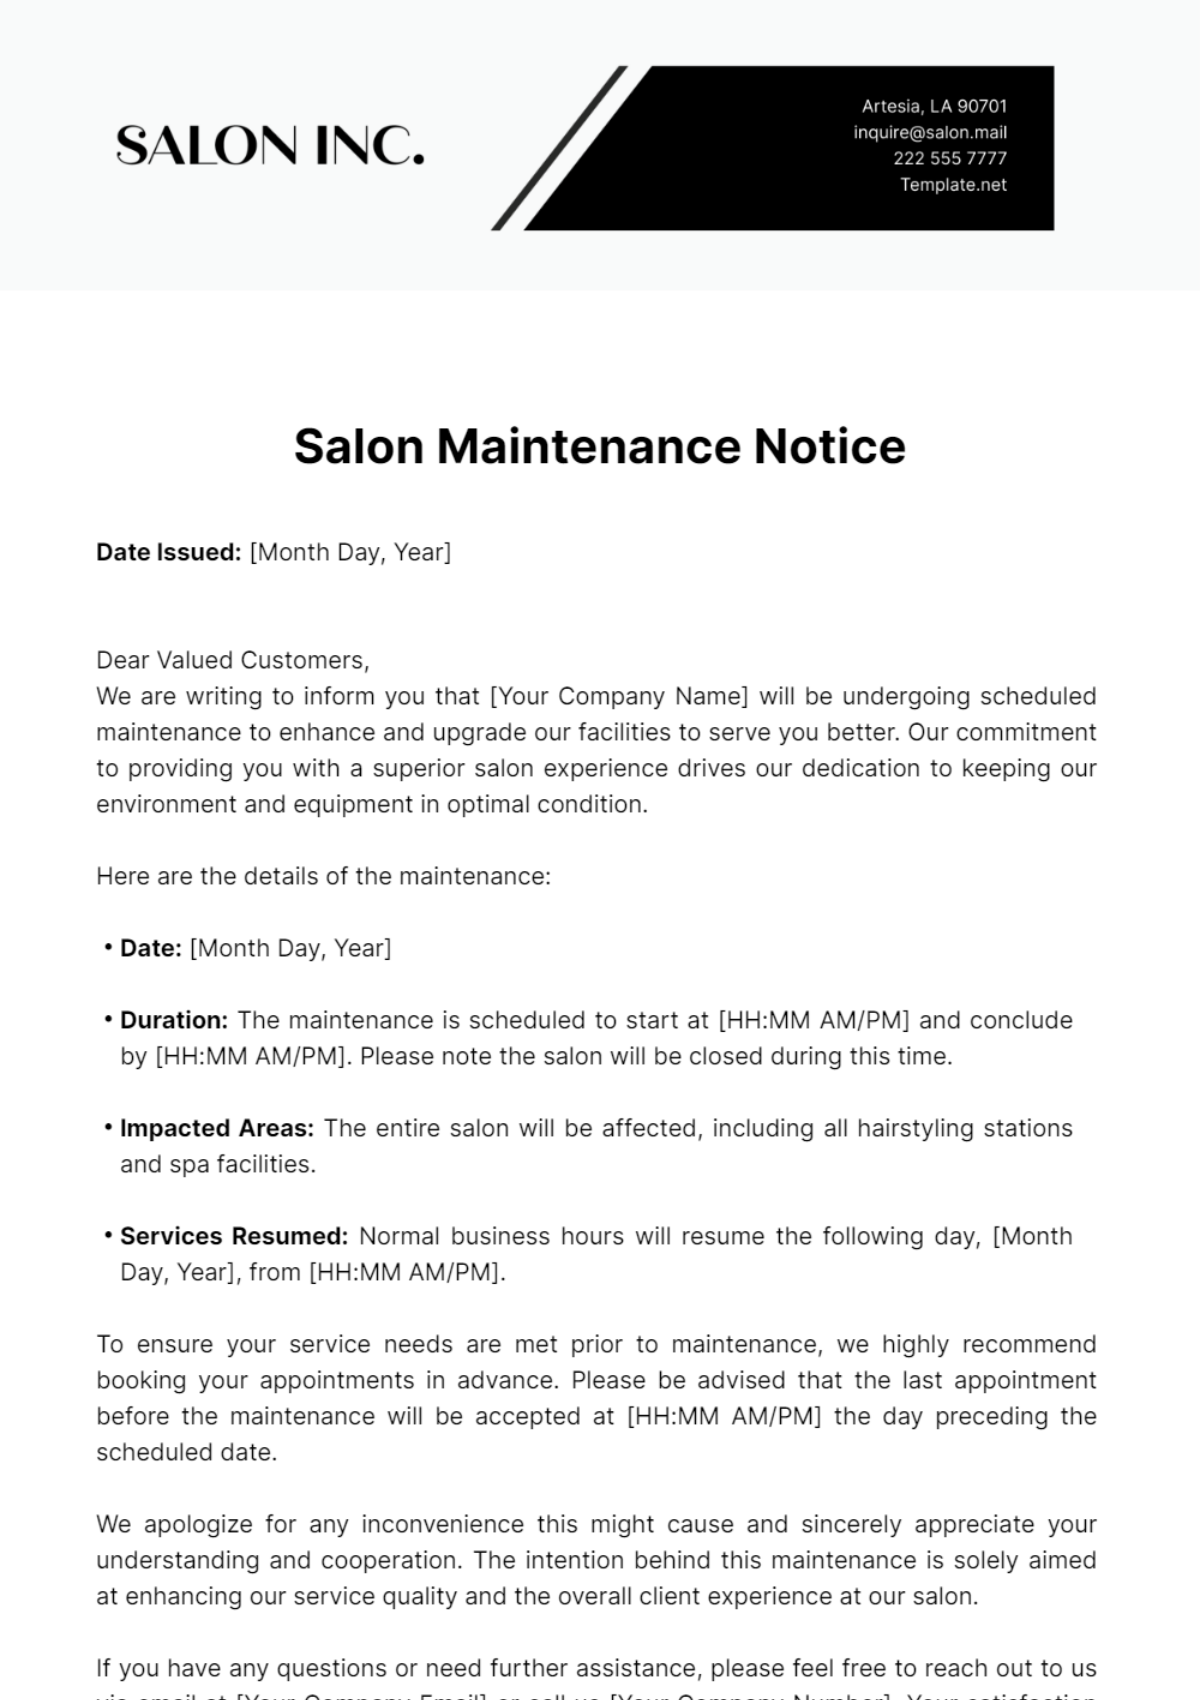 Salon Maintenance Notice Template